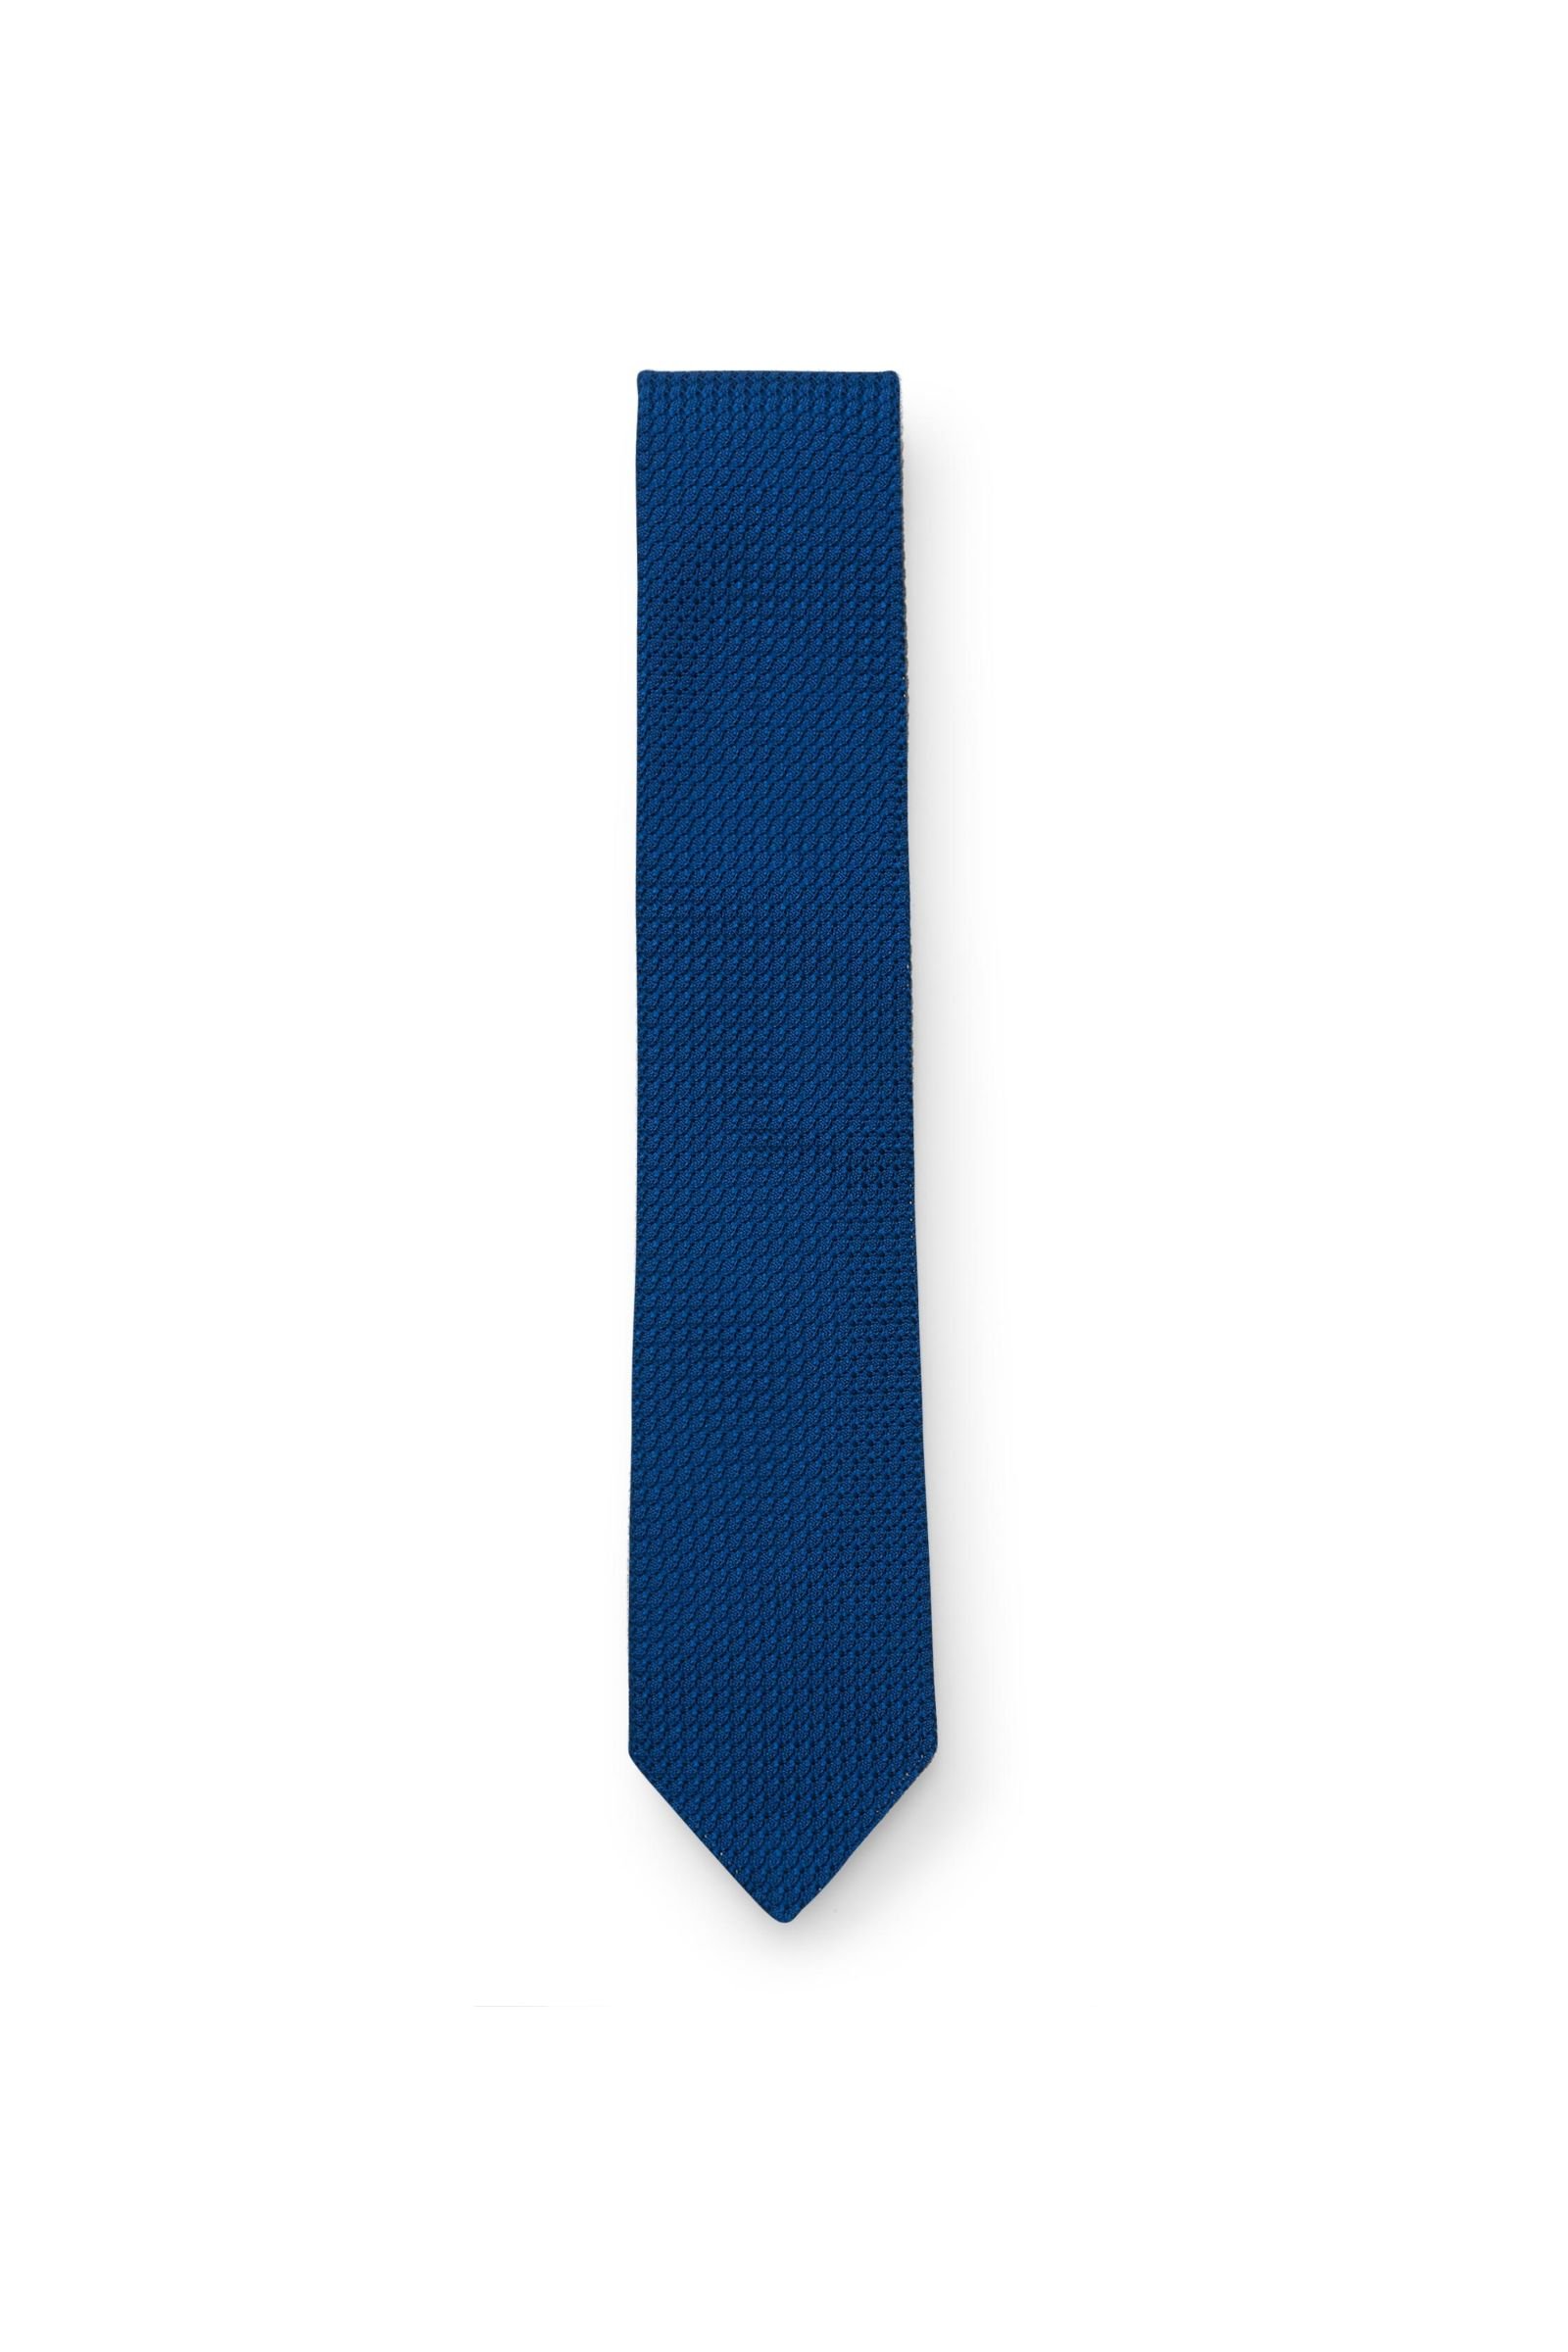 Silk tie blue